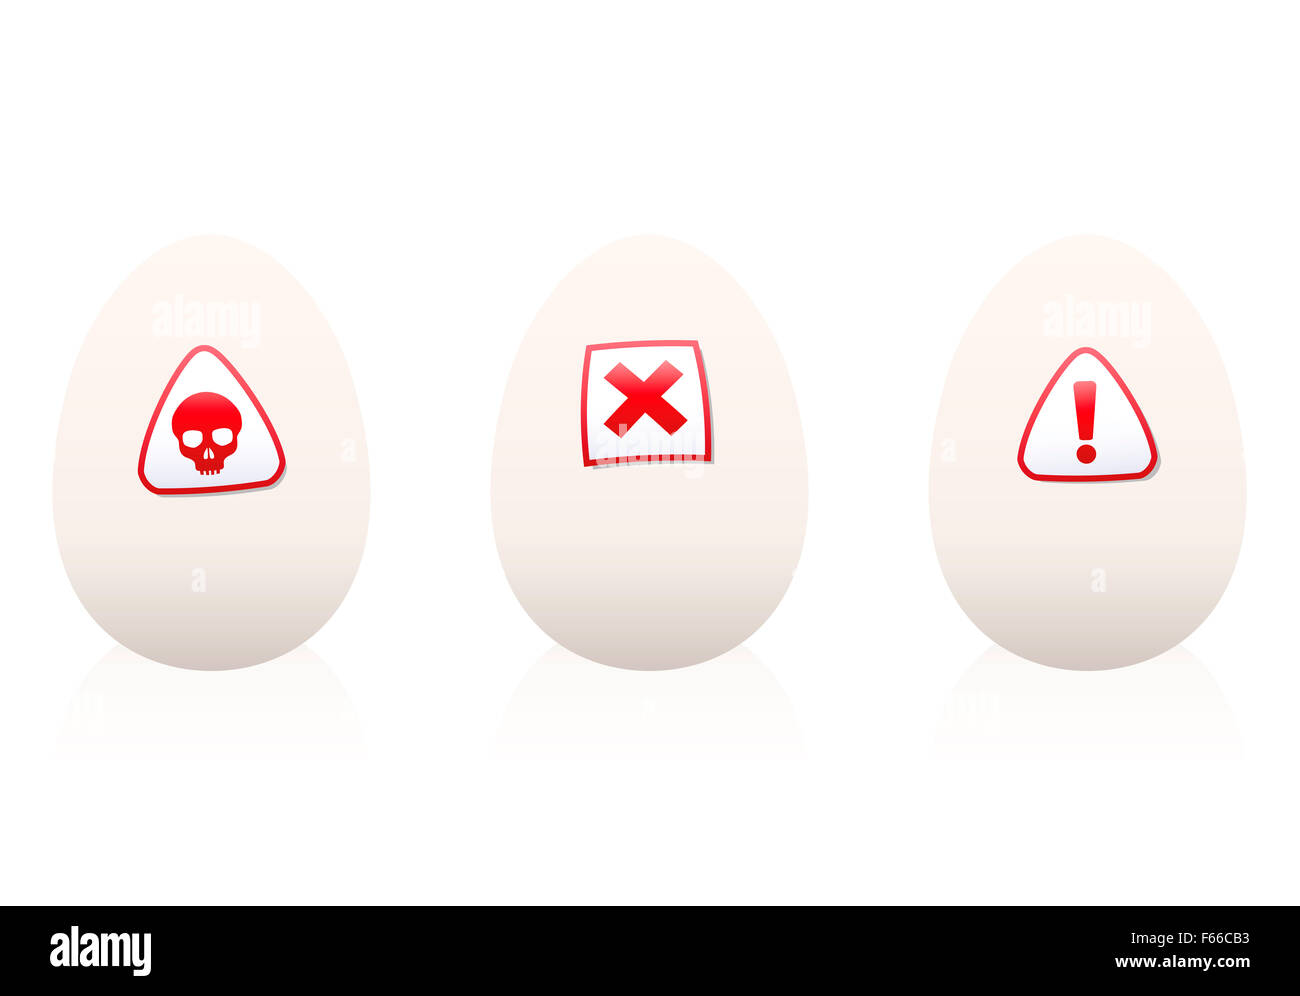 Eiern mit Gefahrensymbole drauf - Warnung gegen ungesunde Lebensmittel oder Ernährung. Abbildung auf weißem Hintergrund. Stockfoto